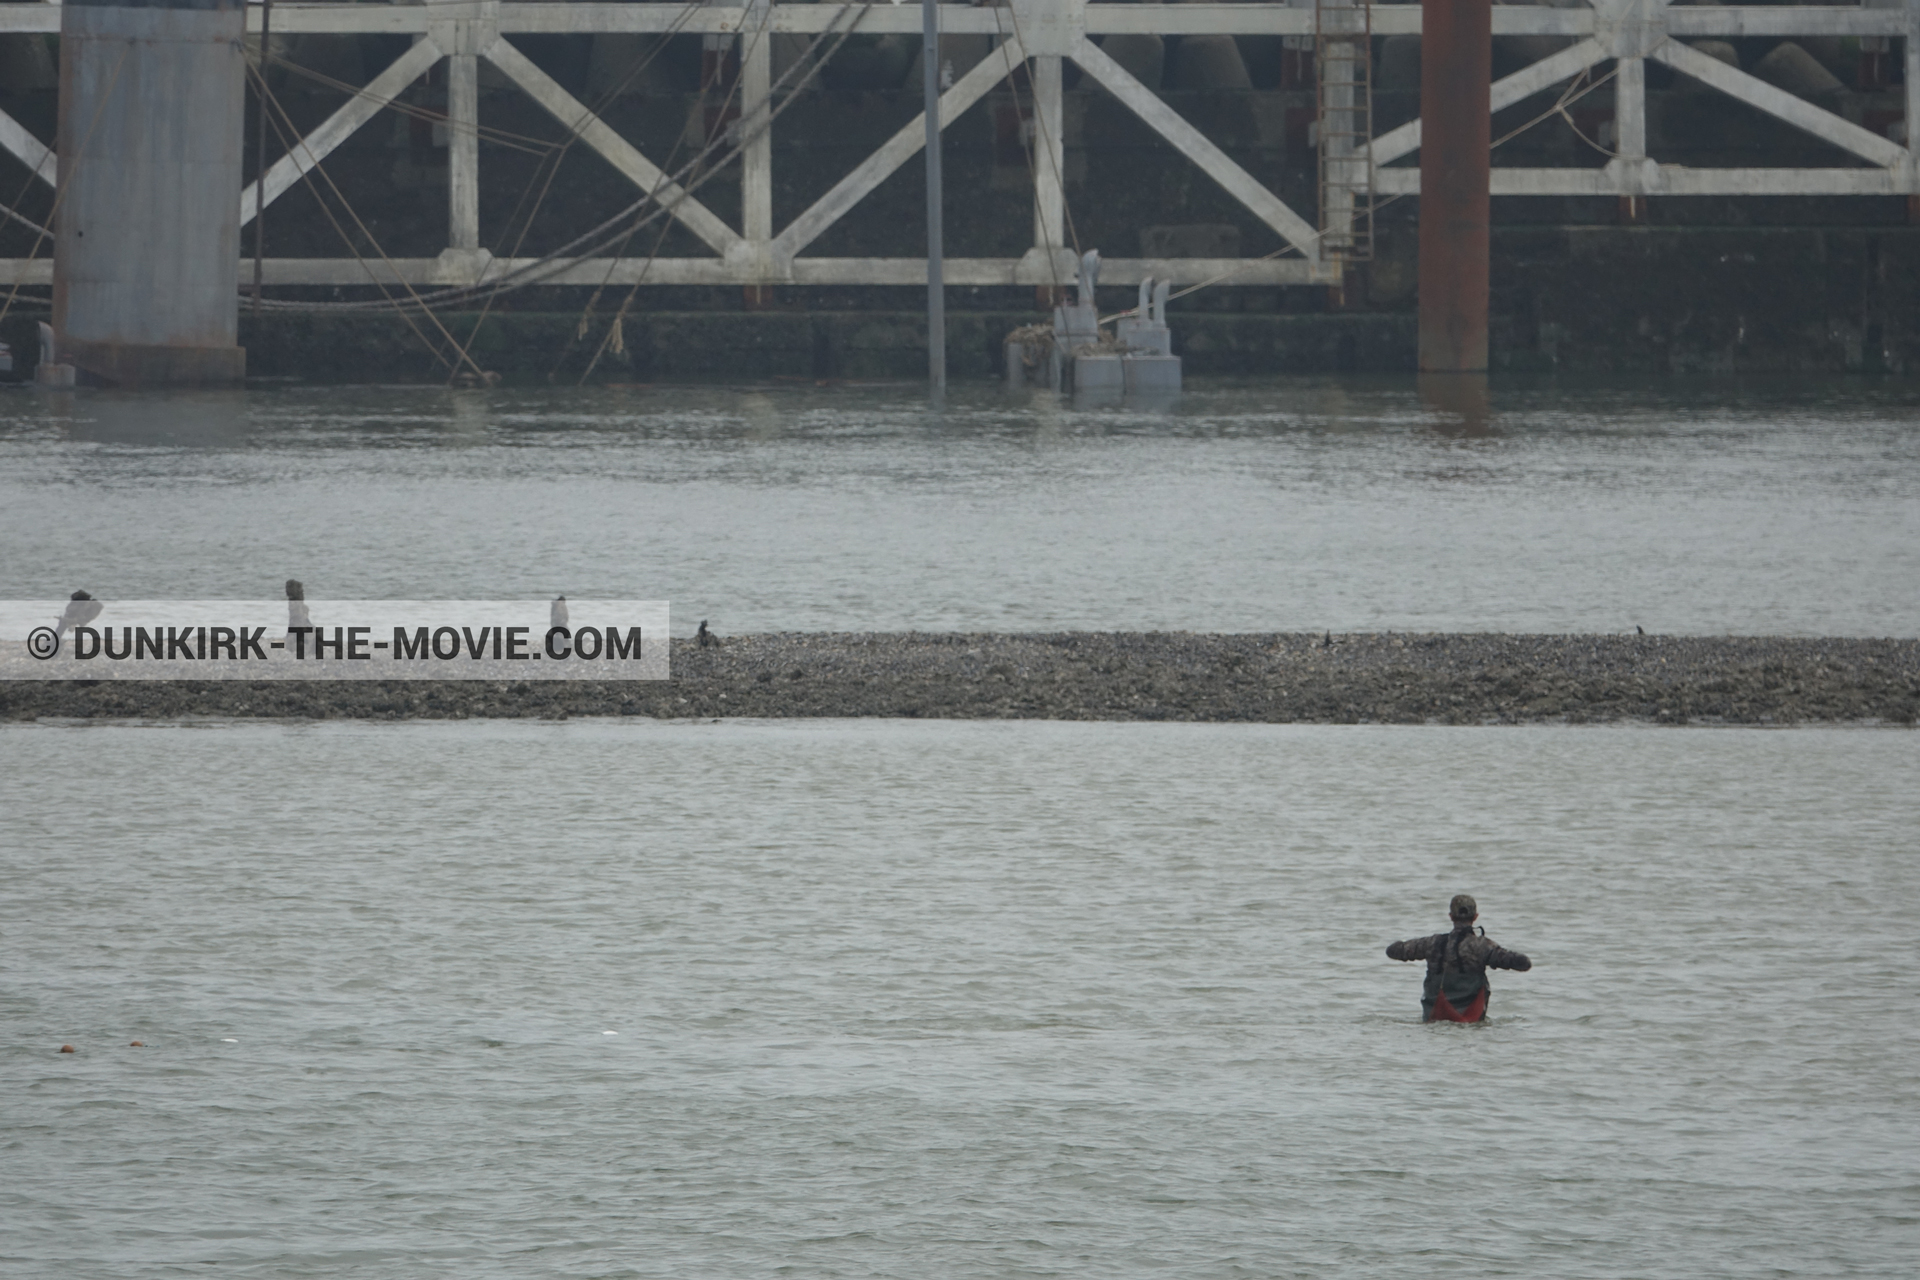 Fotos con muelle del ESTE,  durante el rodaje de la película Dunkerque de Nolan